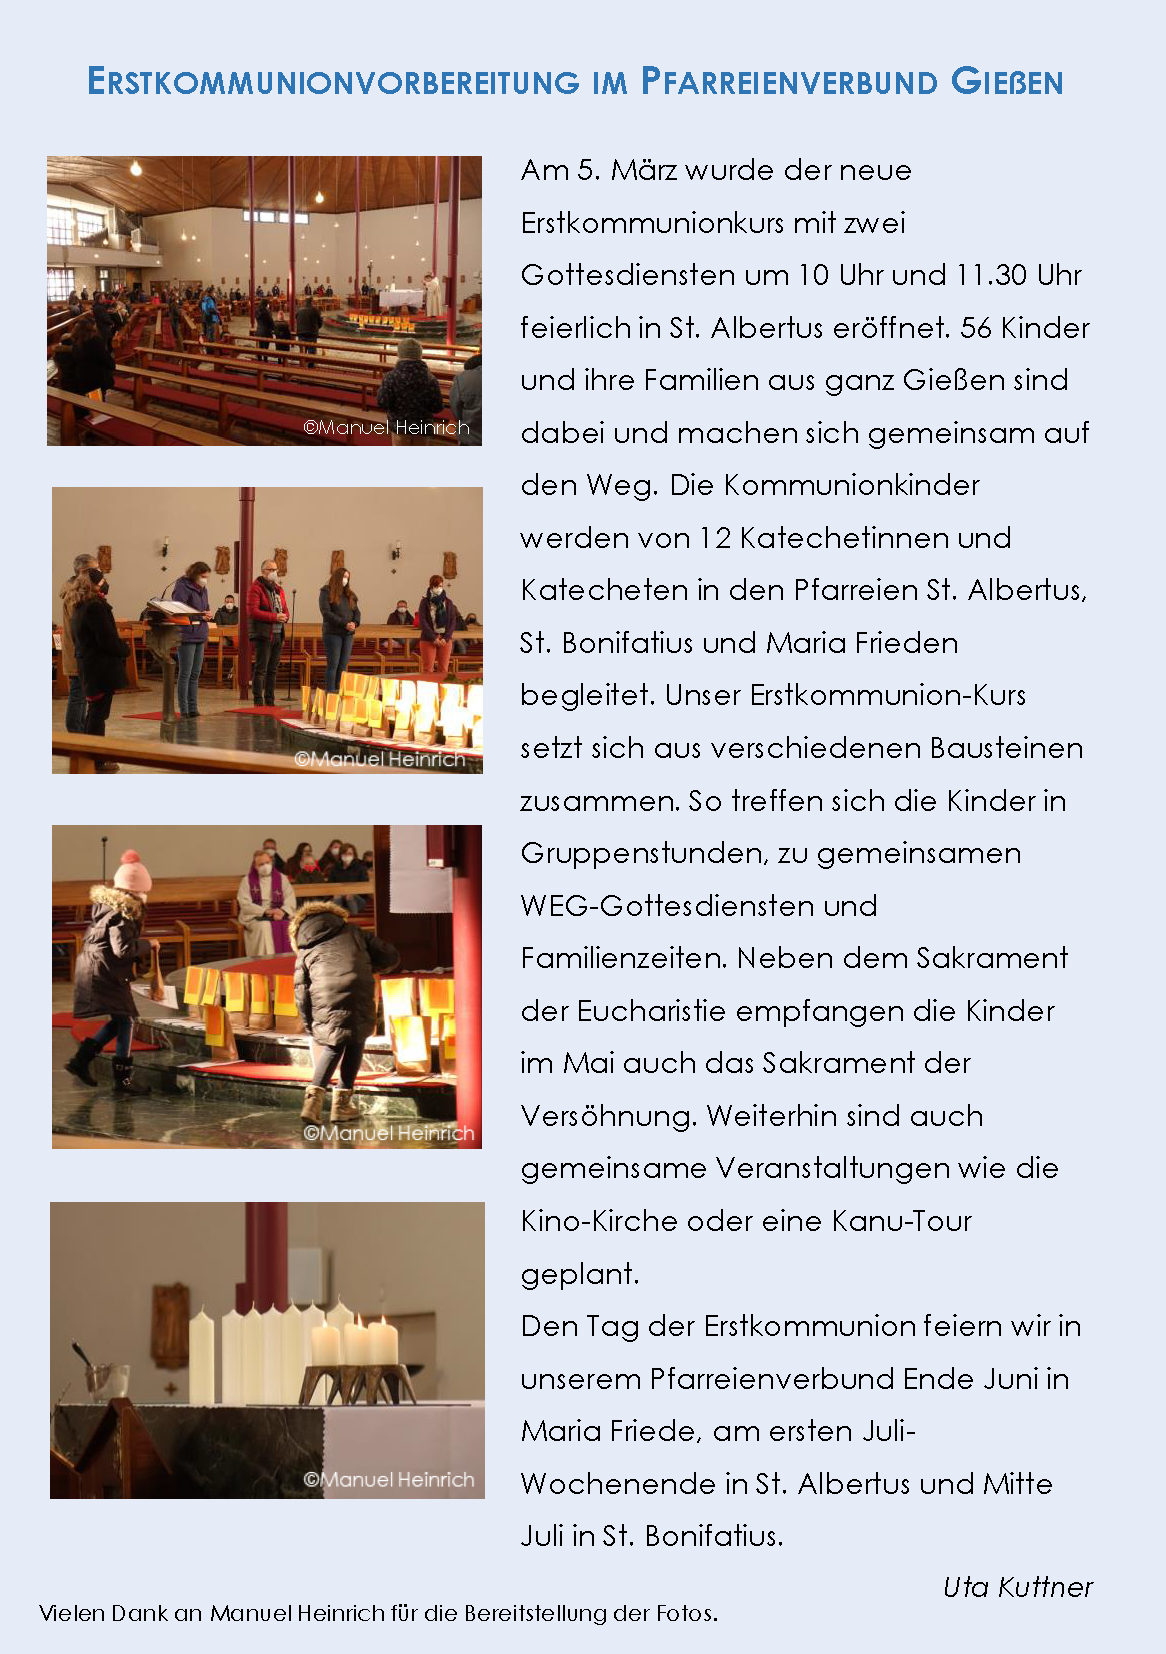 Erstkommunionvorbereitung im Pfarreienverbund Gießen (c) Uta Kuttner